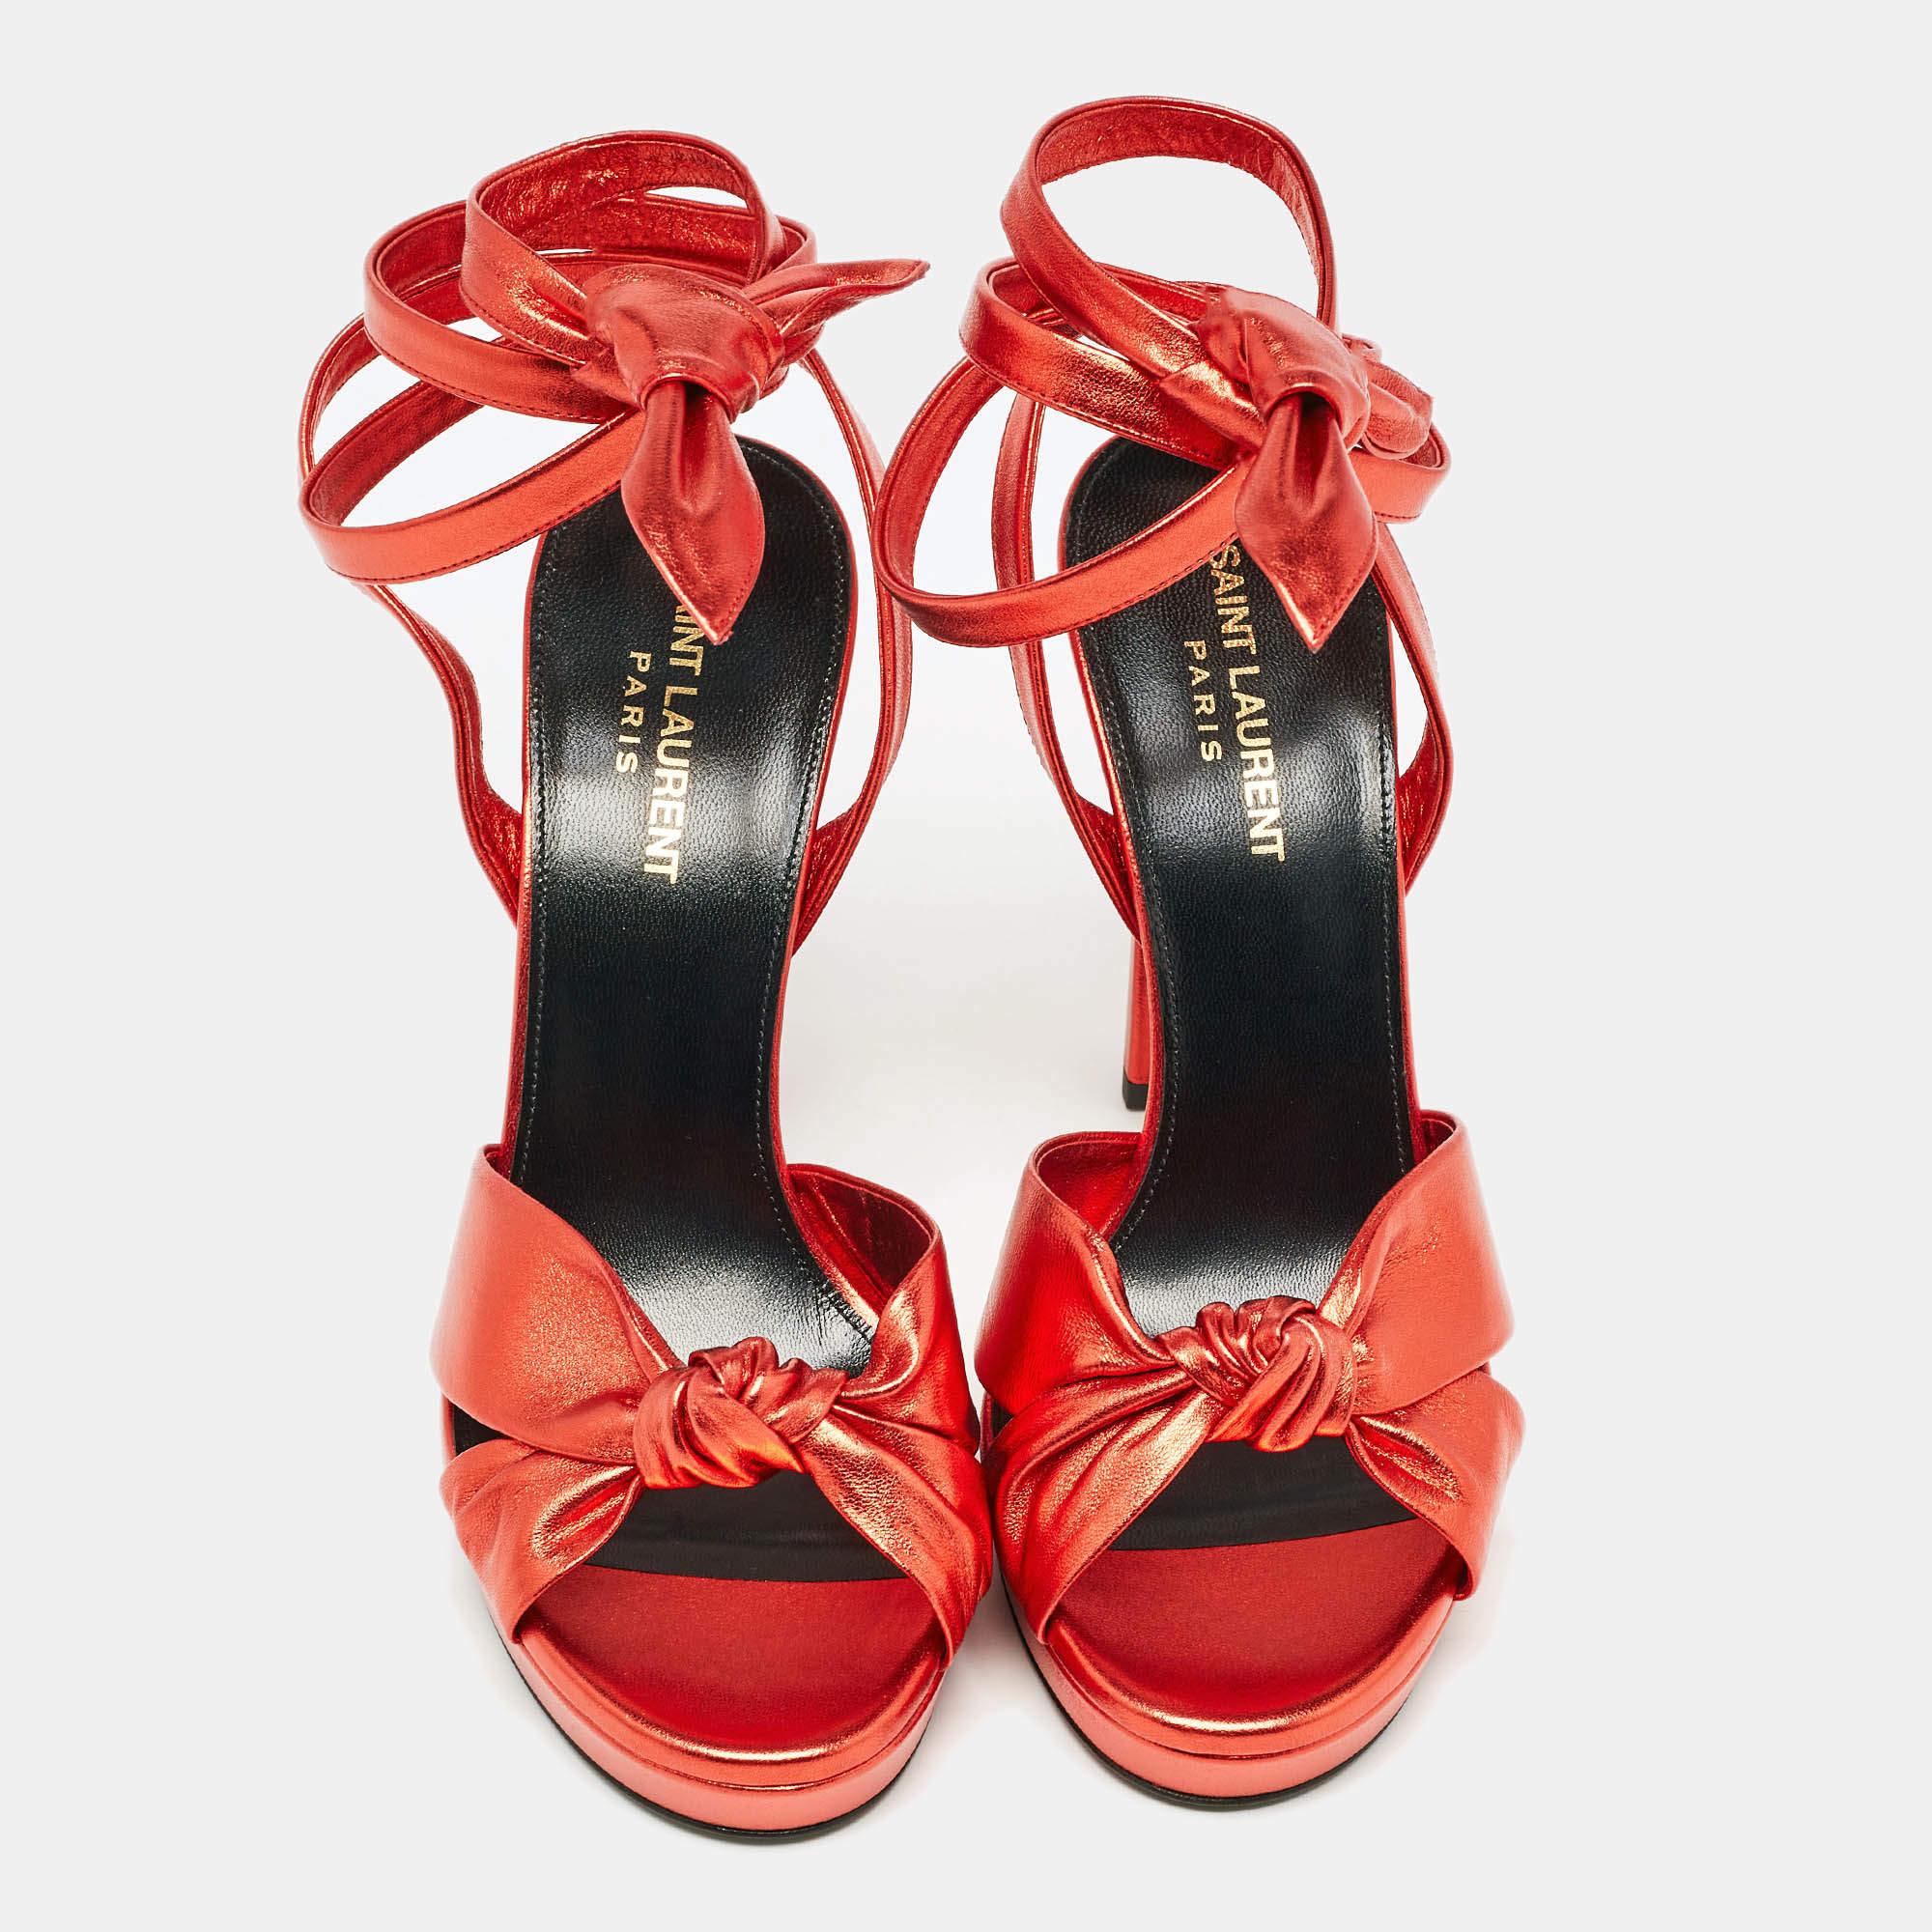 Une magnifique paire de sandales de la maison Yves Saint Laurent pour mettre en valeur vos fabuleux choix stylistiques. Confectionnées en cuir rouge, elles présentent des bouts ouverts et sont dotées de liens à la cheville, de semelles intérieures